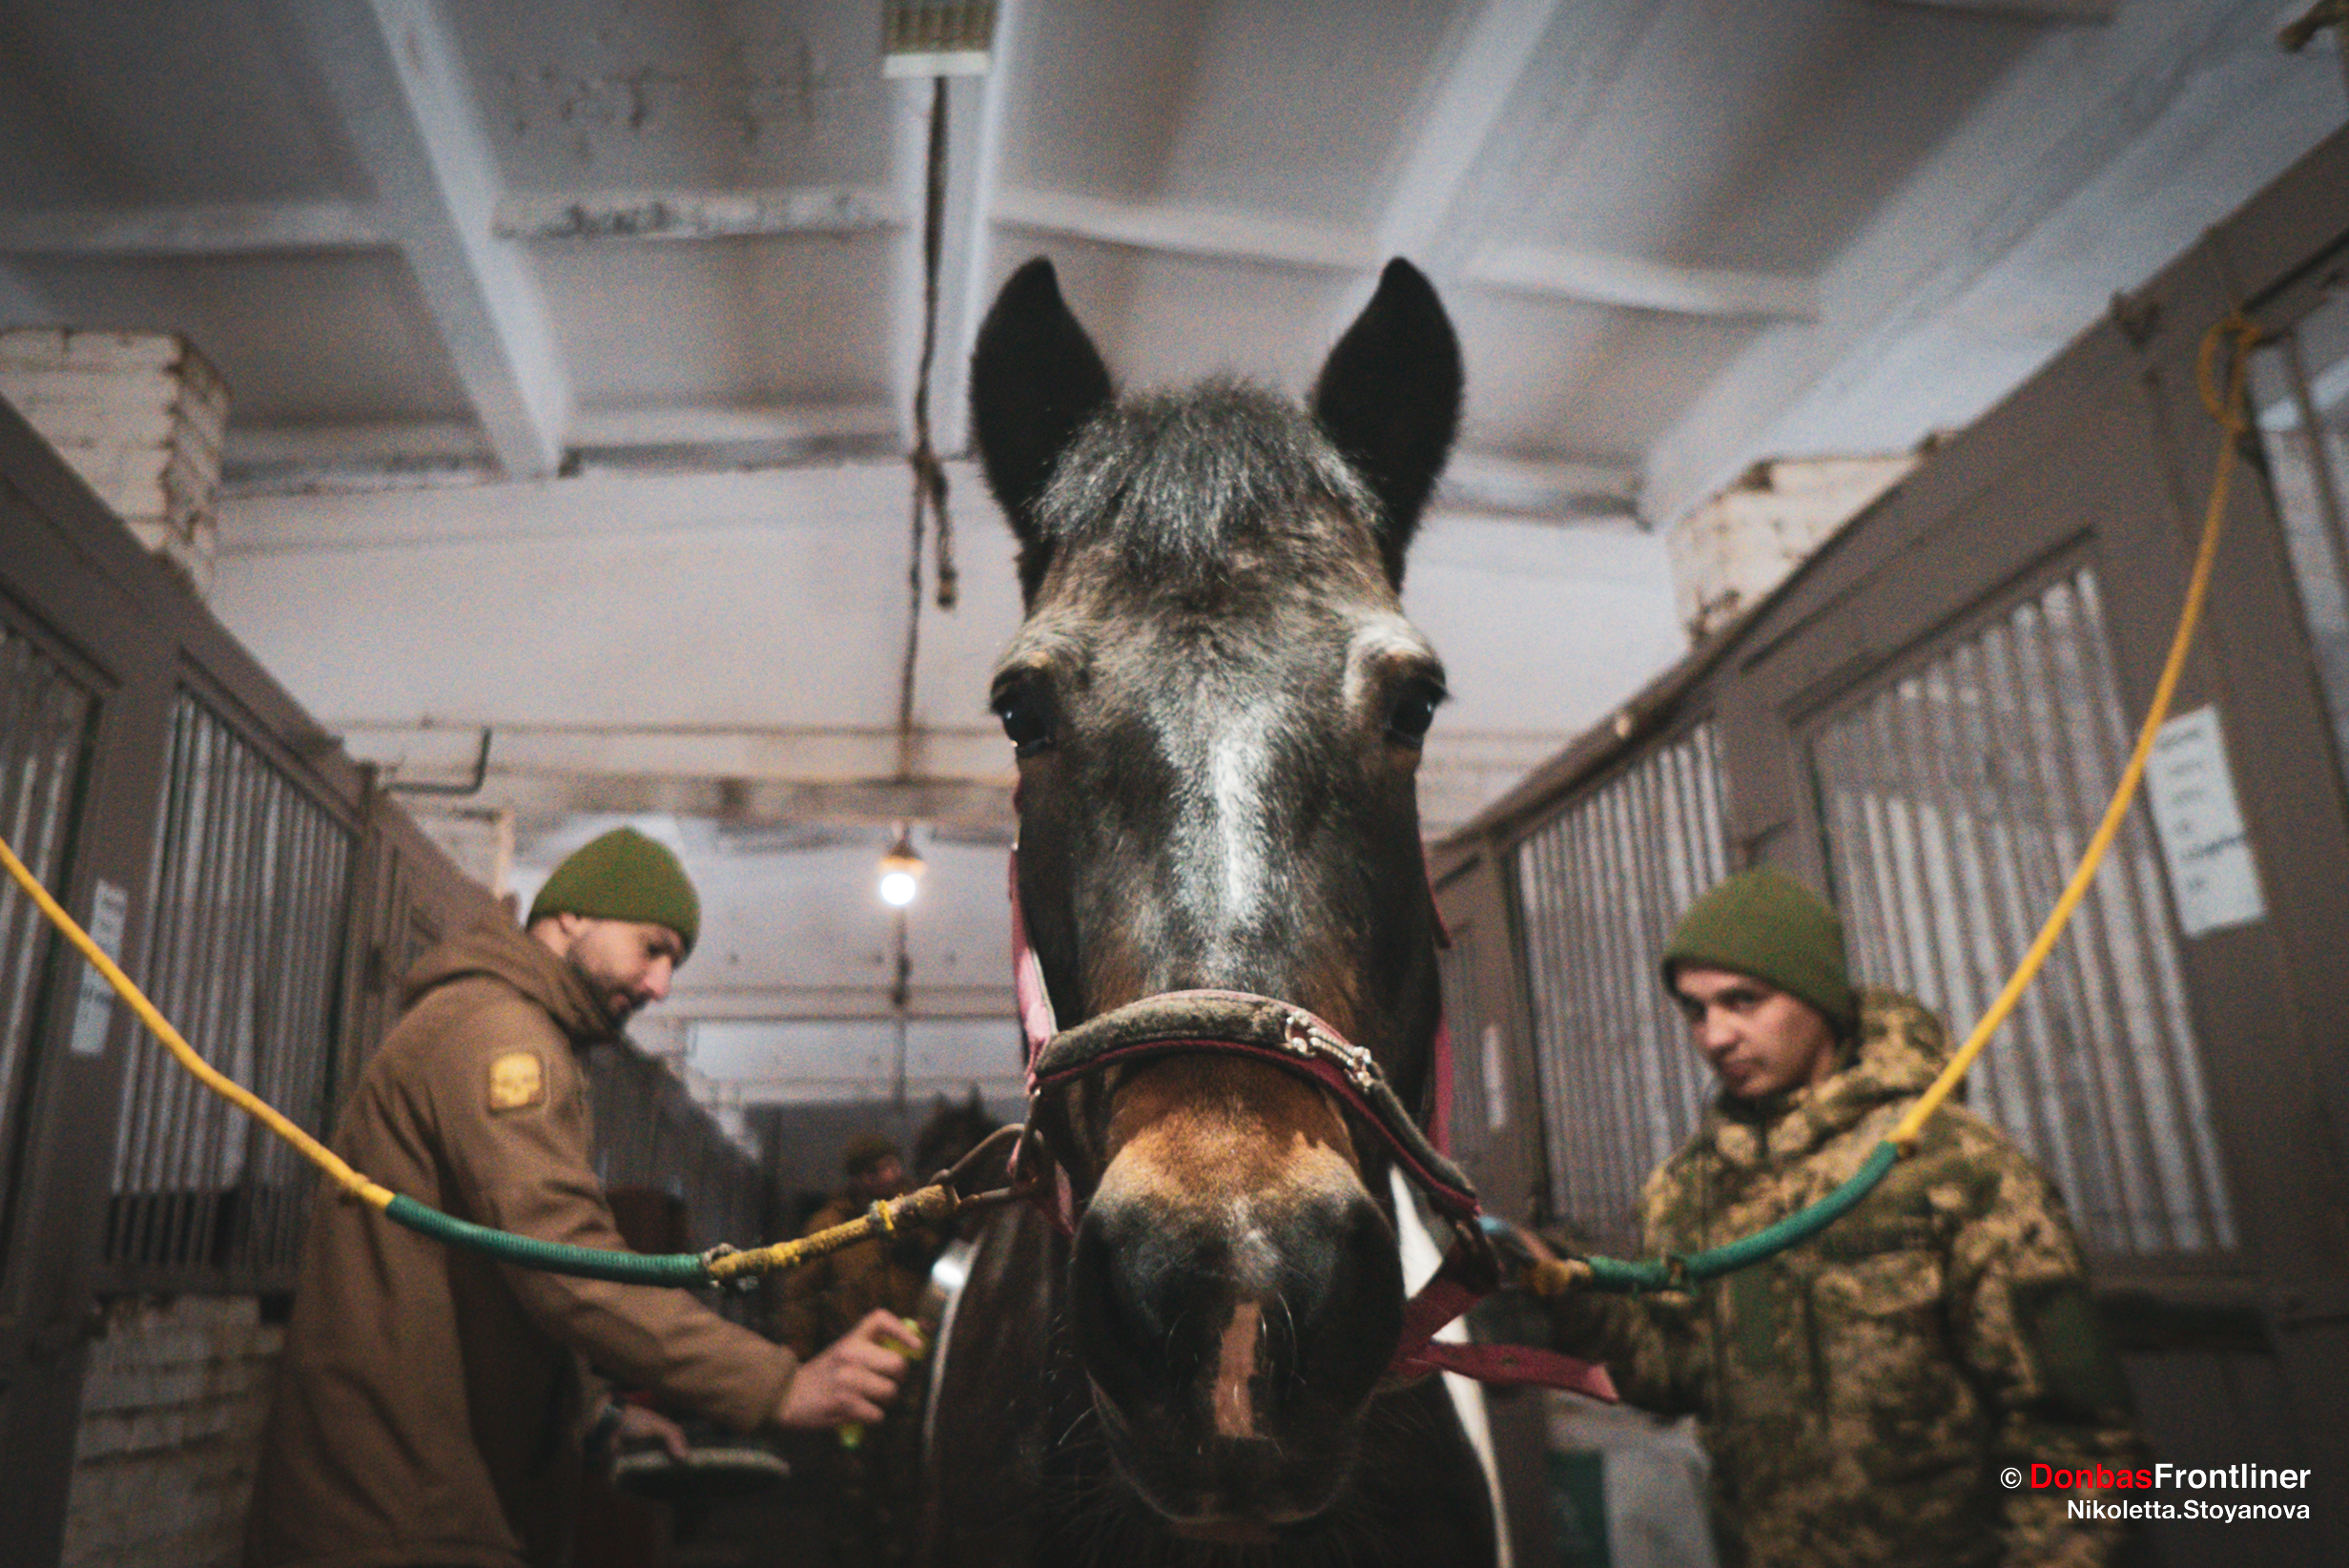 Donbas Frontliner / Догляд за твариною — один з видів іпотерапії.